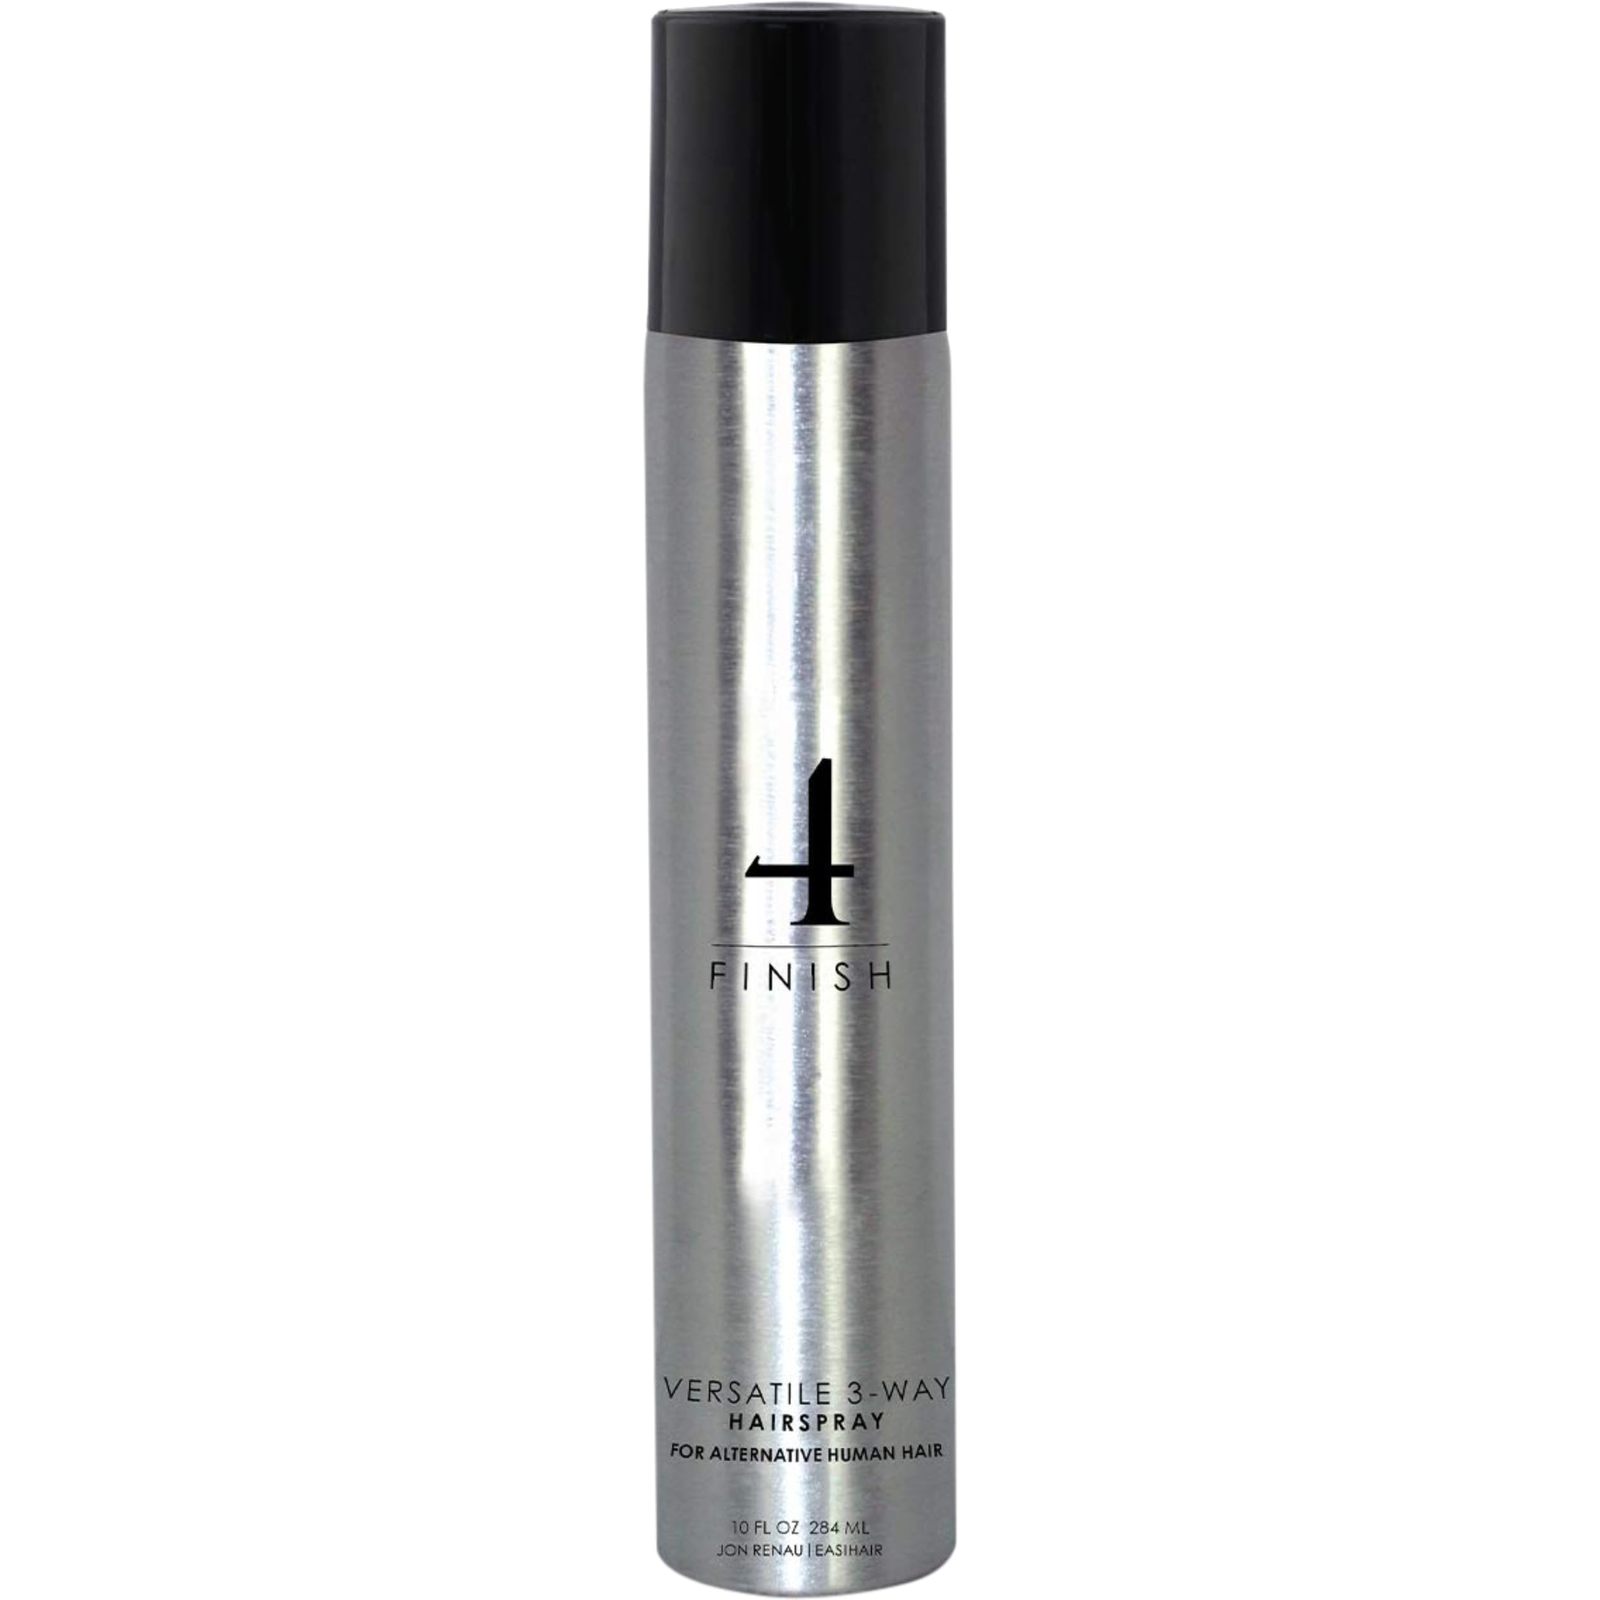 Jon Renau Versatile 3-way Styling Hairspray 10oz - $27.15